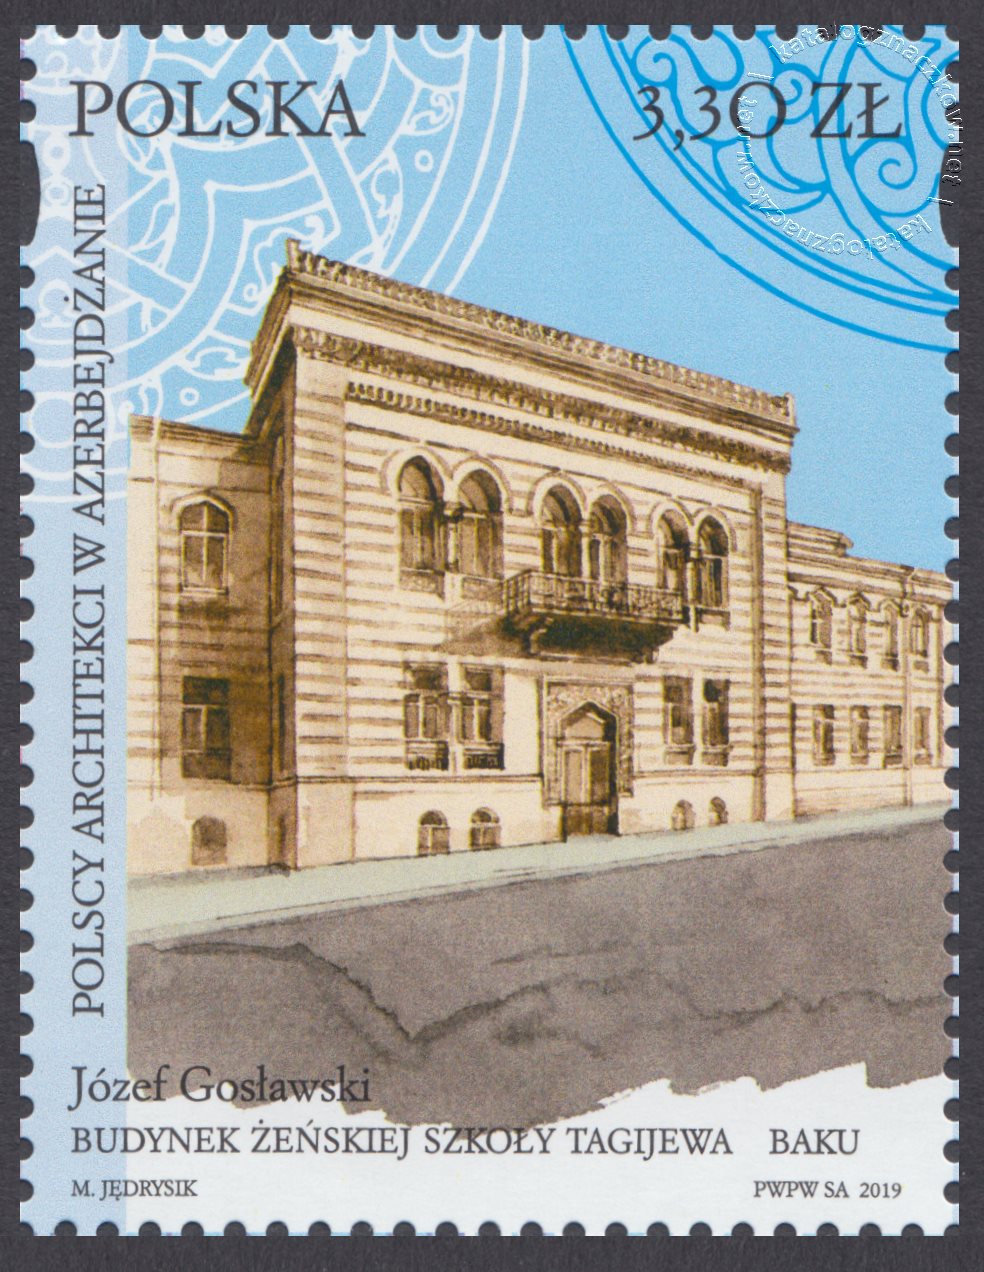 Polscy architekci w Azerbejdżanie znaczek nr 4969